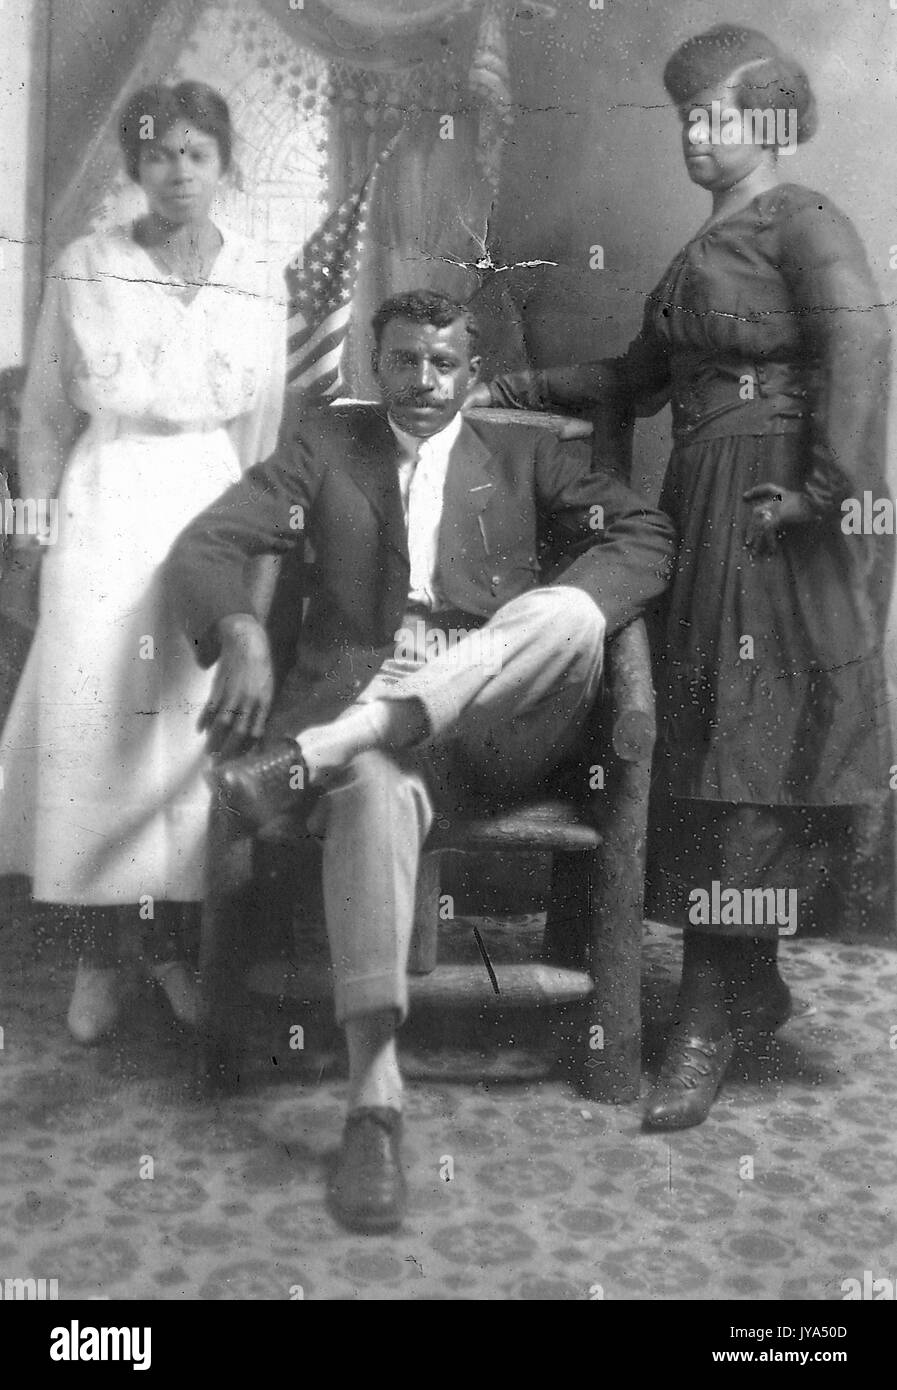 Portrait d'une famille afro-américaine, le père assis sur une chaise avec la mère debout reposant sa main sur la chaise, fille debout à gauche des parents, ou de toile peinte avec un drapeau américain, 1910. Banque D'Images